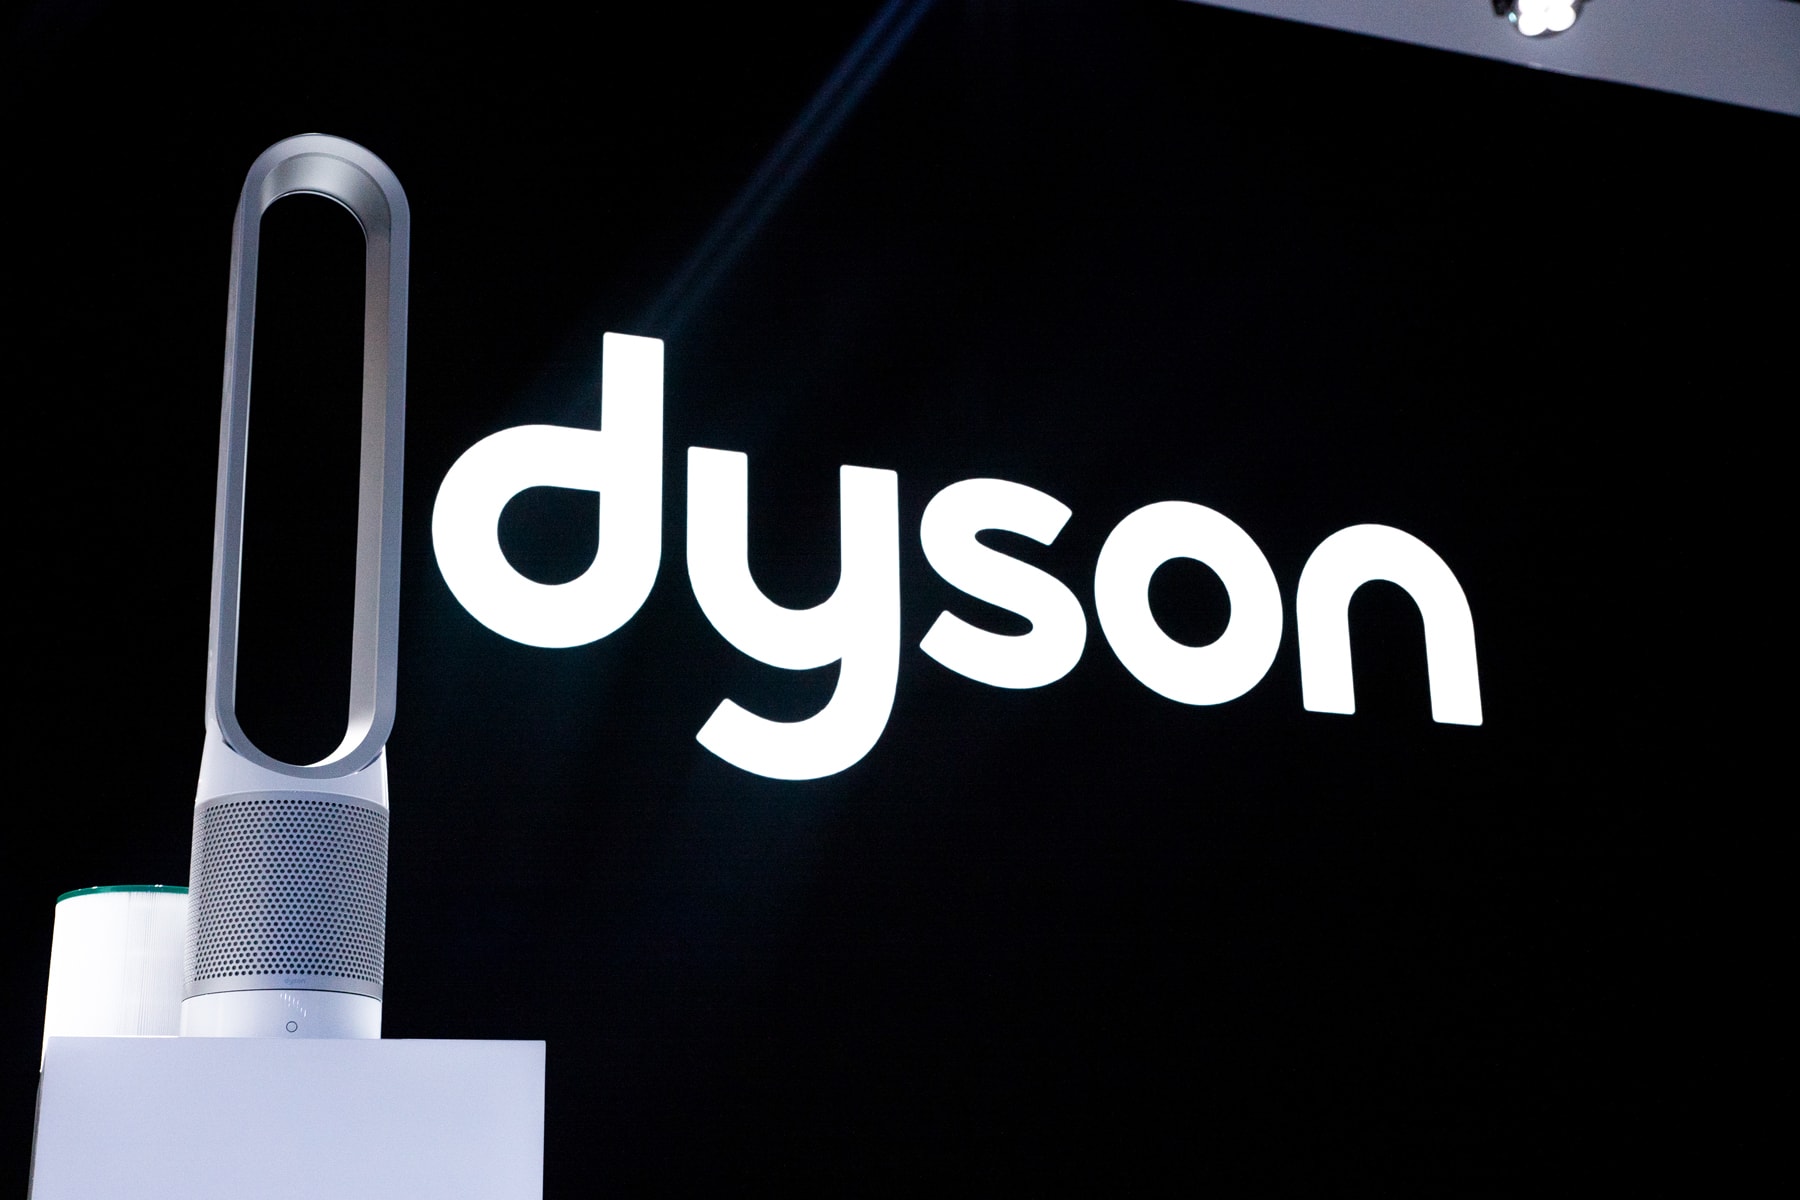 走進 Dyson Pure 最新空氣清新風扇系列北京發布會現場